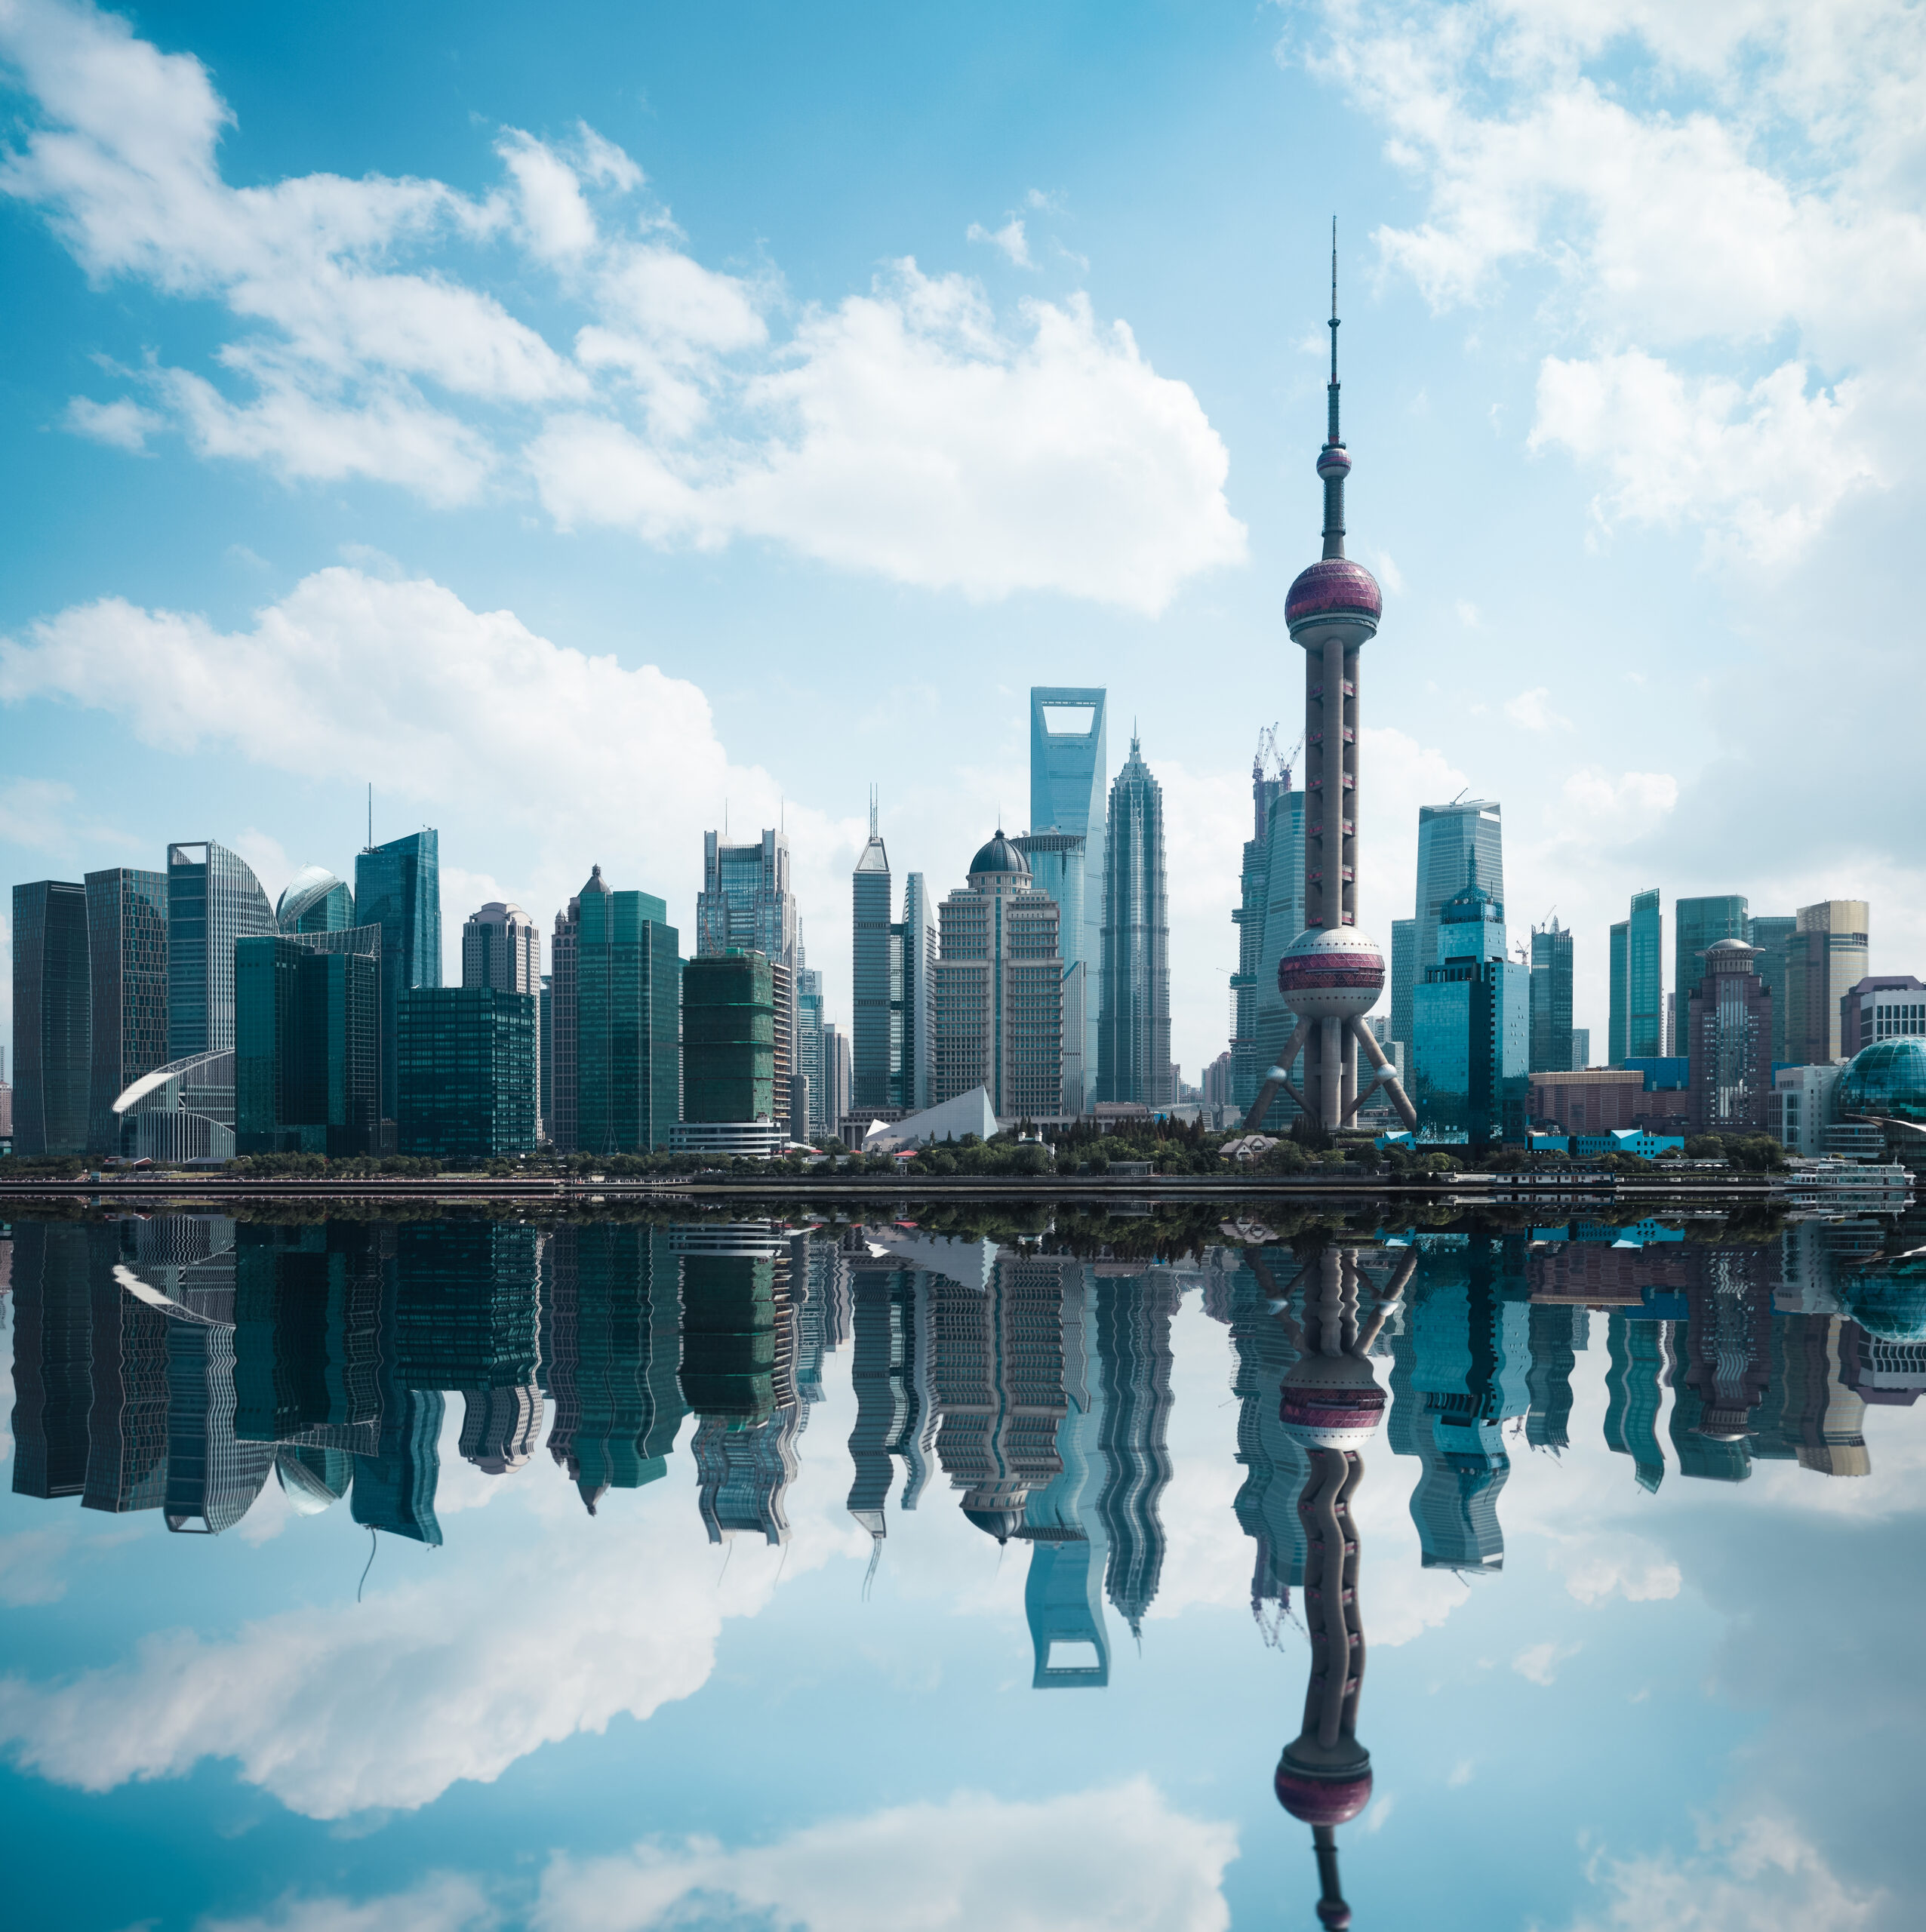 shanghai,skyline,against,a,blue,sky,with,reflection